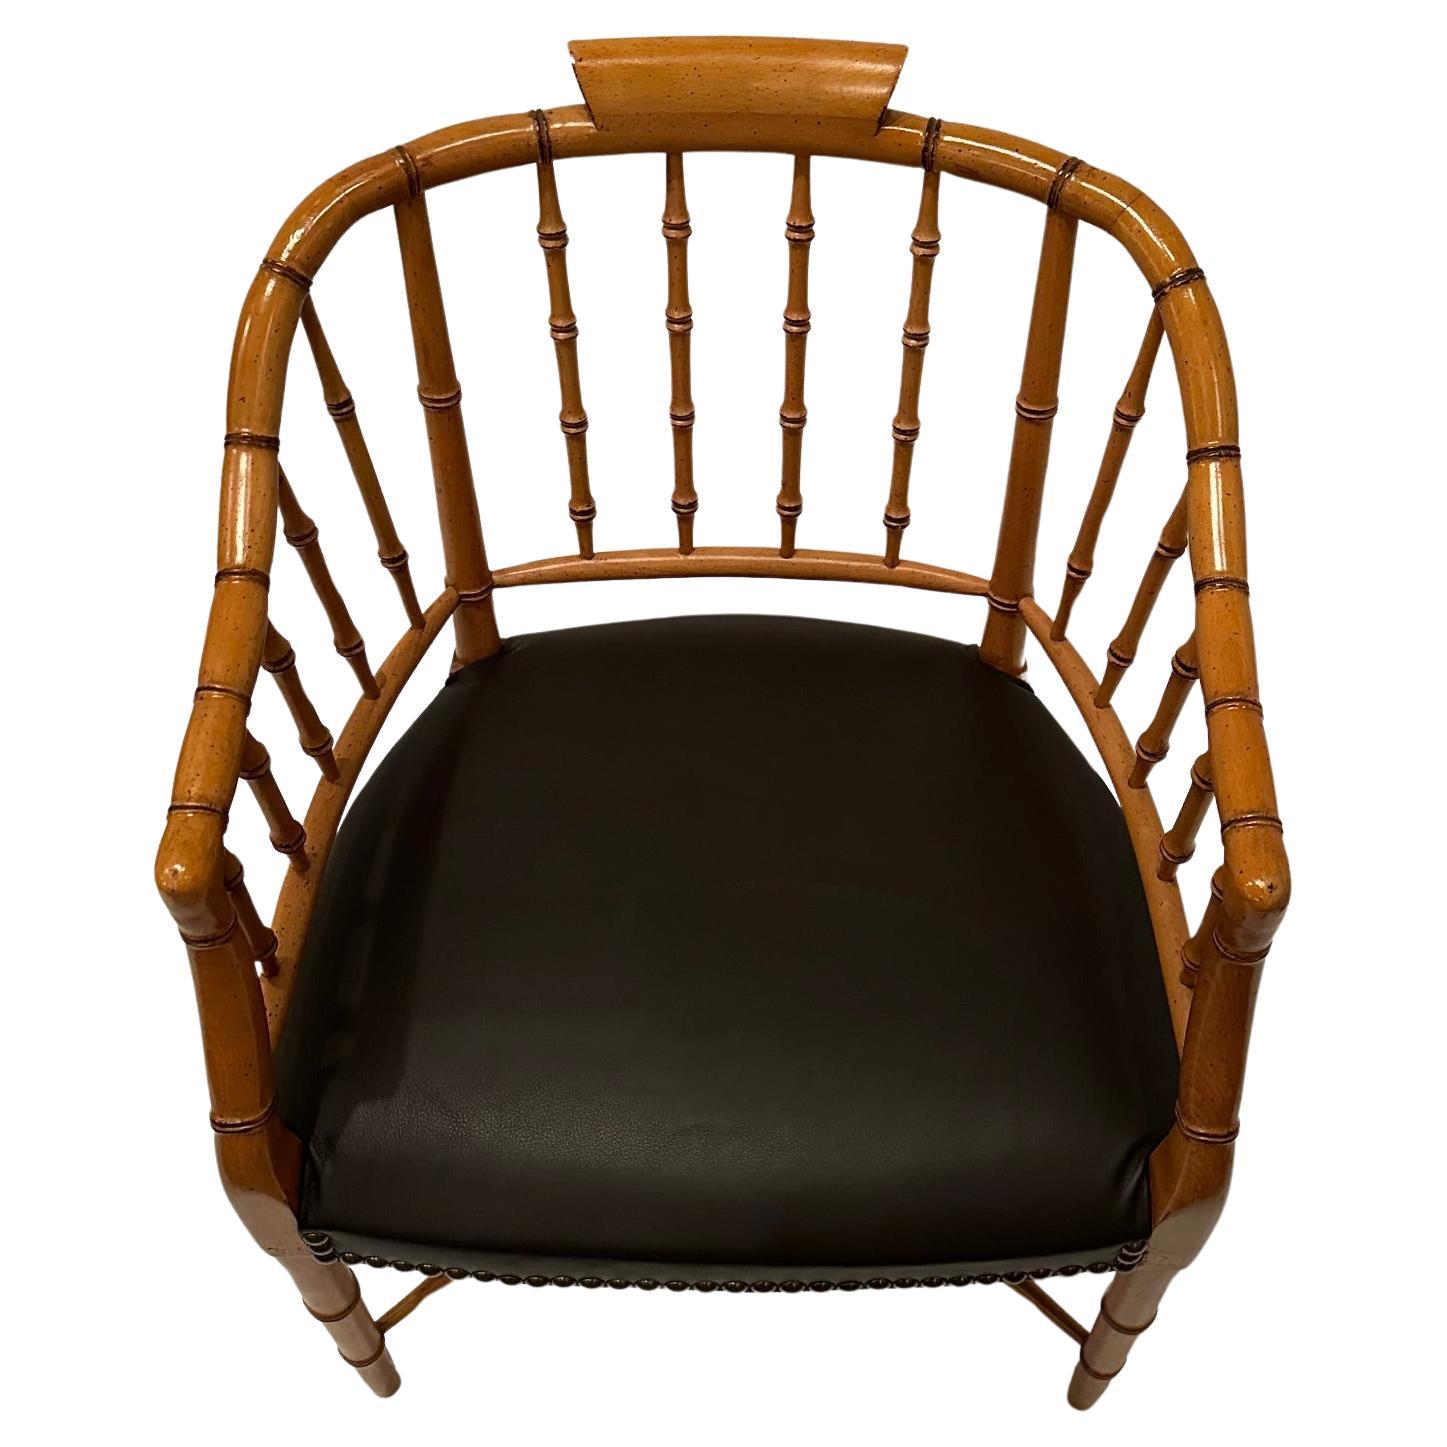 Raffinierter Sessel aus Bambusimitat, neu gepolstert mit schokoladenfarbenem Leder und mit Messingnägeln versehen.  Armhöhe 27